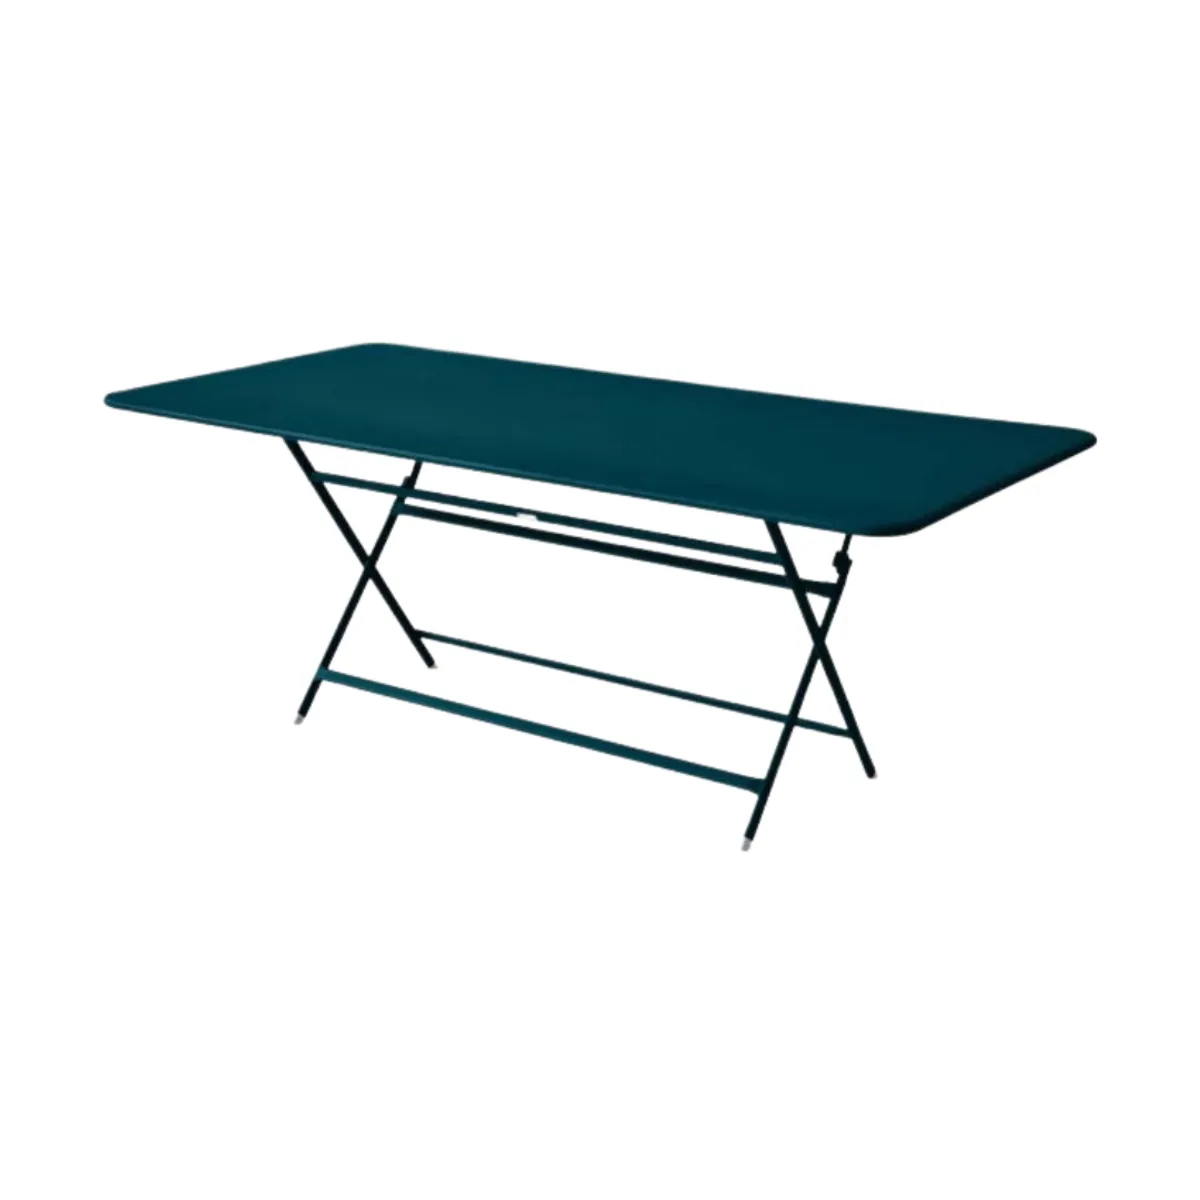 Caractere rectangular folding table 6